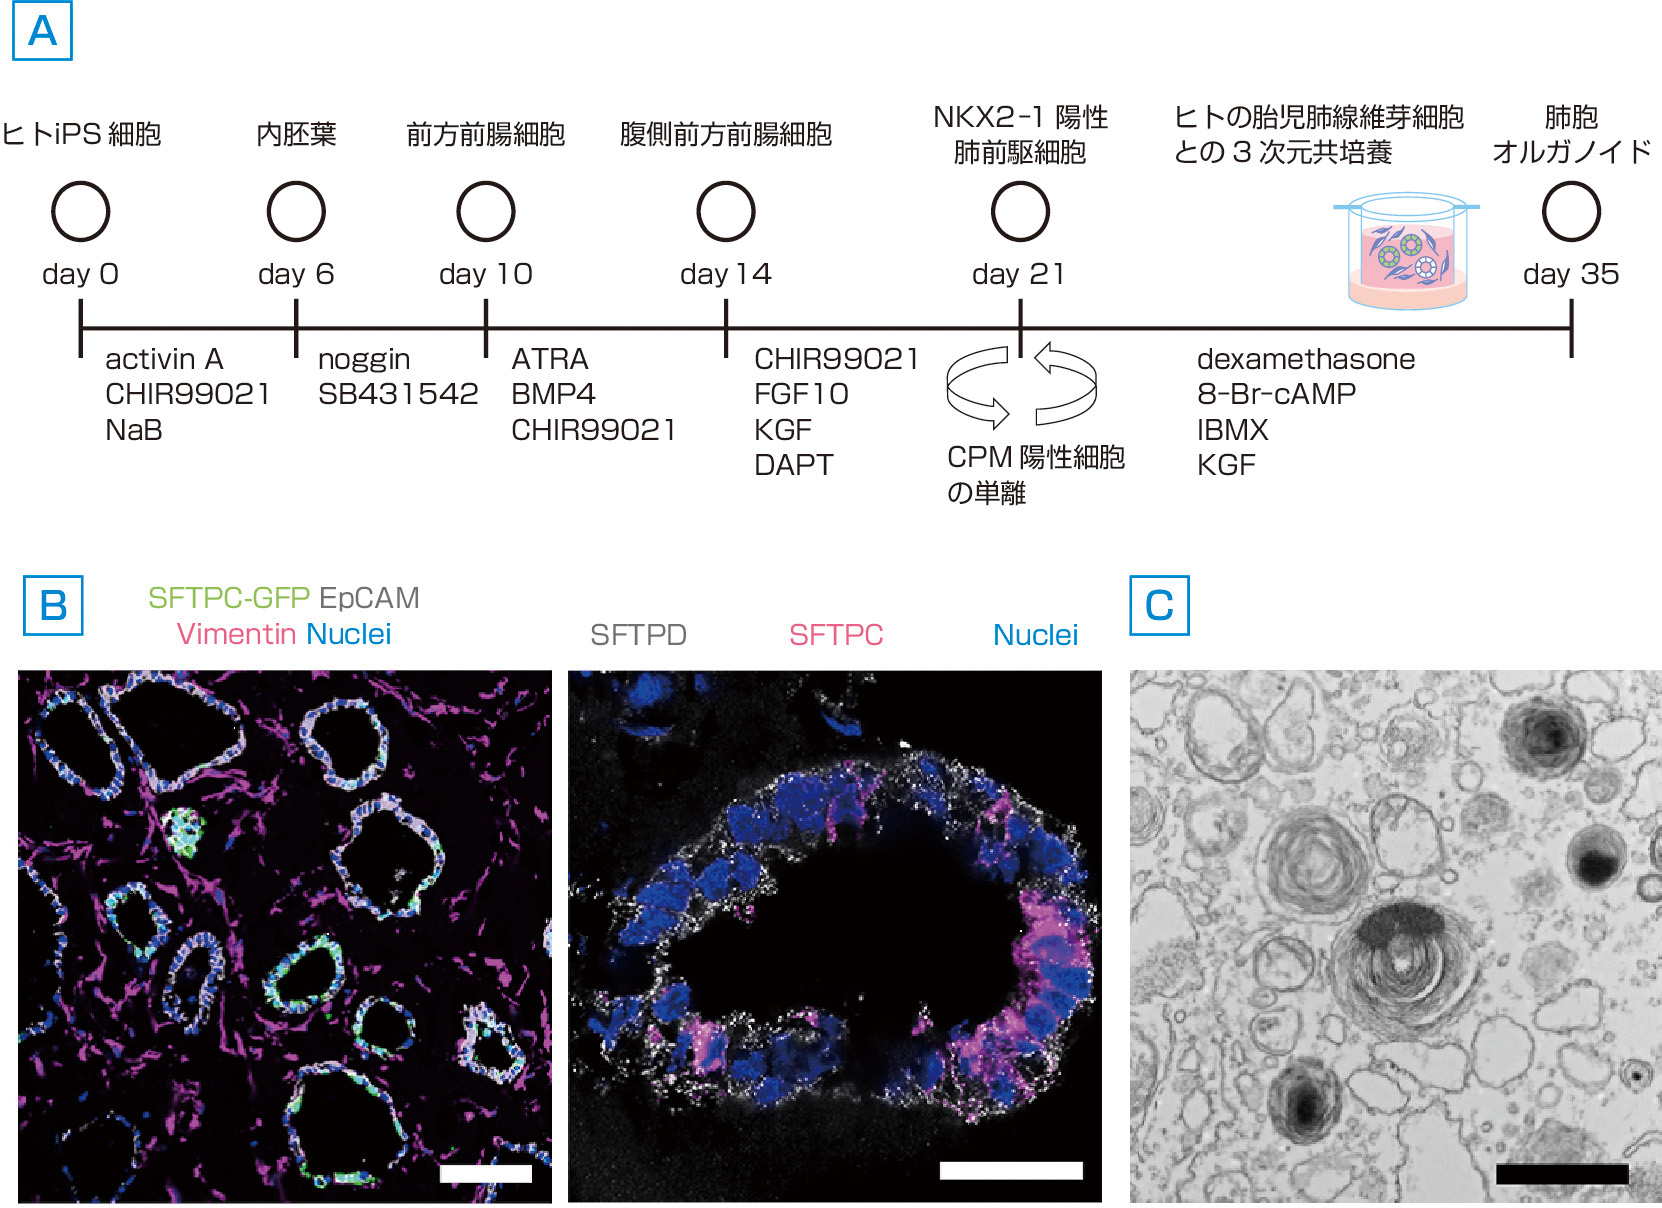 図1　iPS細胞から肺胞上皮細胞への分化誘導 (Yamamoto Y, Gotoh S, et al: Nat Methods, 2017; 14: 1097–1106より作成)． A, B：ヒトのiPS細胞からⅡ型肺胞上皮細胞あるいはその前駆細胞への分化を誘導する研究は，内胚葉 (definitive endoderm) の作製から前腸 (foregut endoderm) を誘導して段階的に前駆細胞を作製していくといった実際の肺発生の諸段階をたどることで作製している．NKX2–1陽性の腹側前方前腸細胞 (ventralized anterior foregut endoderm) を分化させ，carboxypeptidase M (CPM) という表面蛋白質を用いて単離し，Wntシグナル伝達経路の促進作用をもつCHIR99021を加え，FGF10，KGF，そして，Notchシグナル伝達経路を抑制するDAPTを添加した培地にて7日間培養する「前処理」を行った．このNKX2–1陽性細胞と，ヒトの胎児肺線維芽細胞とを共培養して肺胞のオルガノイドを形成させると，約50％という高い効率でⅡ型肺胞上皮細胞の特異的なマーカーであるSFTPCに陽性を示す細胞への分化が可能となった．スケールバー：(左) 100 µm，(右) 25 µm． C：電子顕微鏡ではⅡ型肺胞上皮細胞に特徴的なラメラ体が確認される．スケールバー：1 µm．